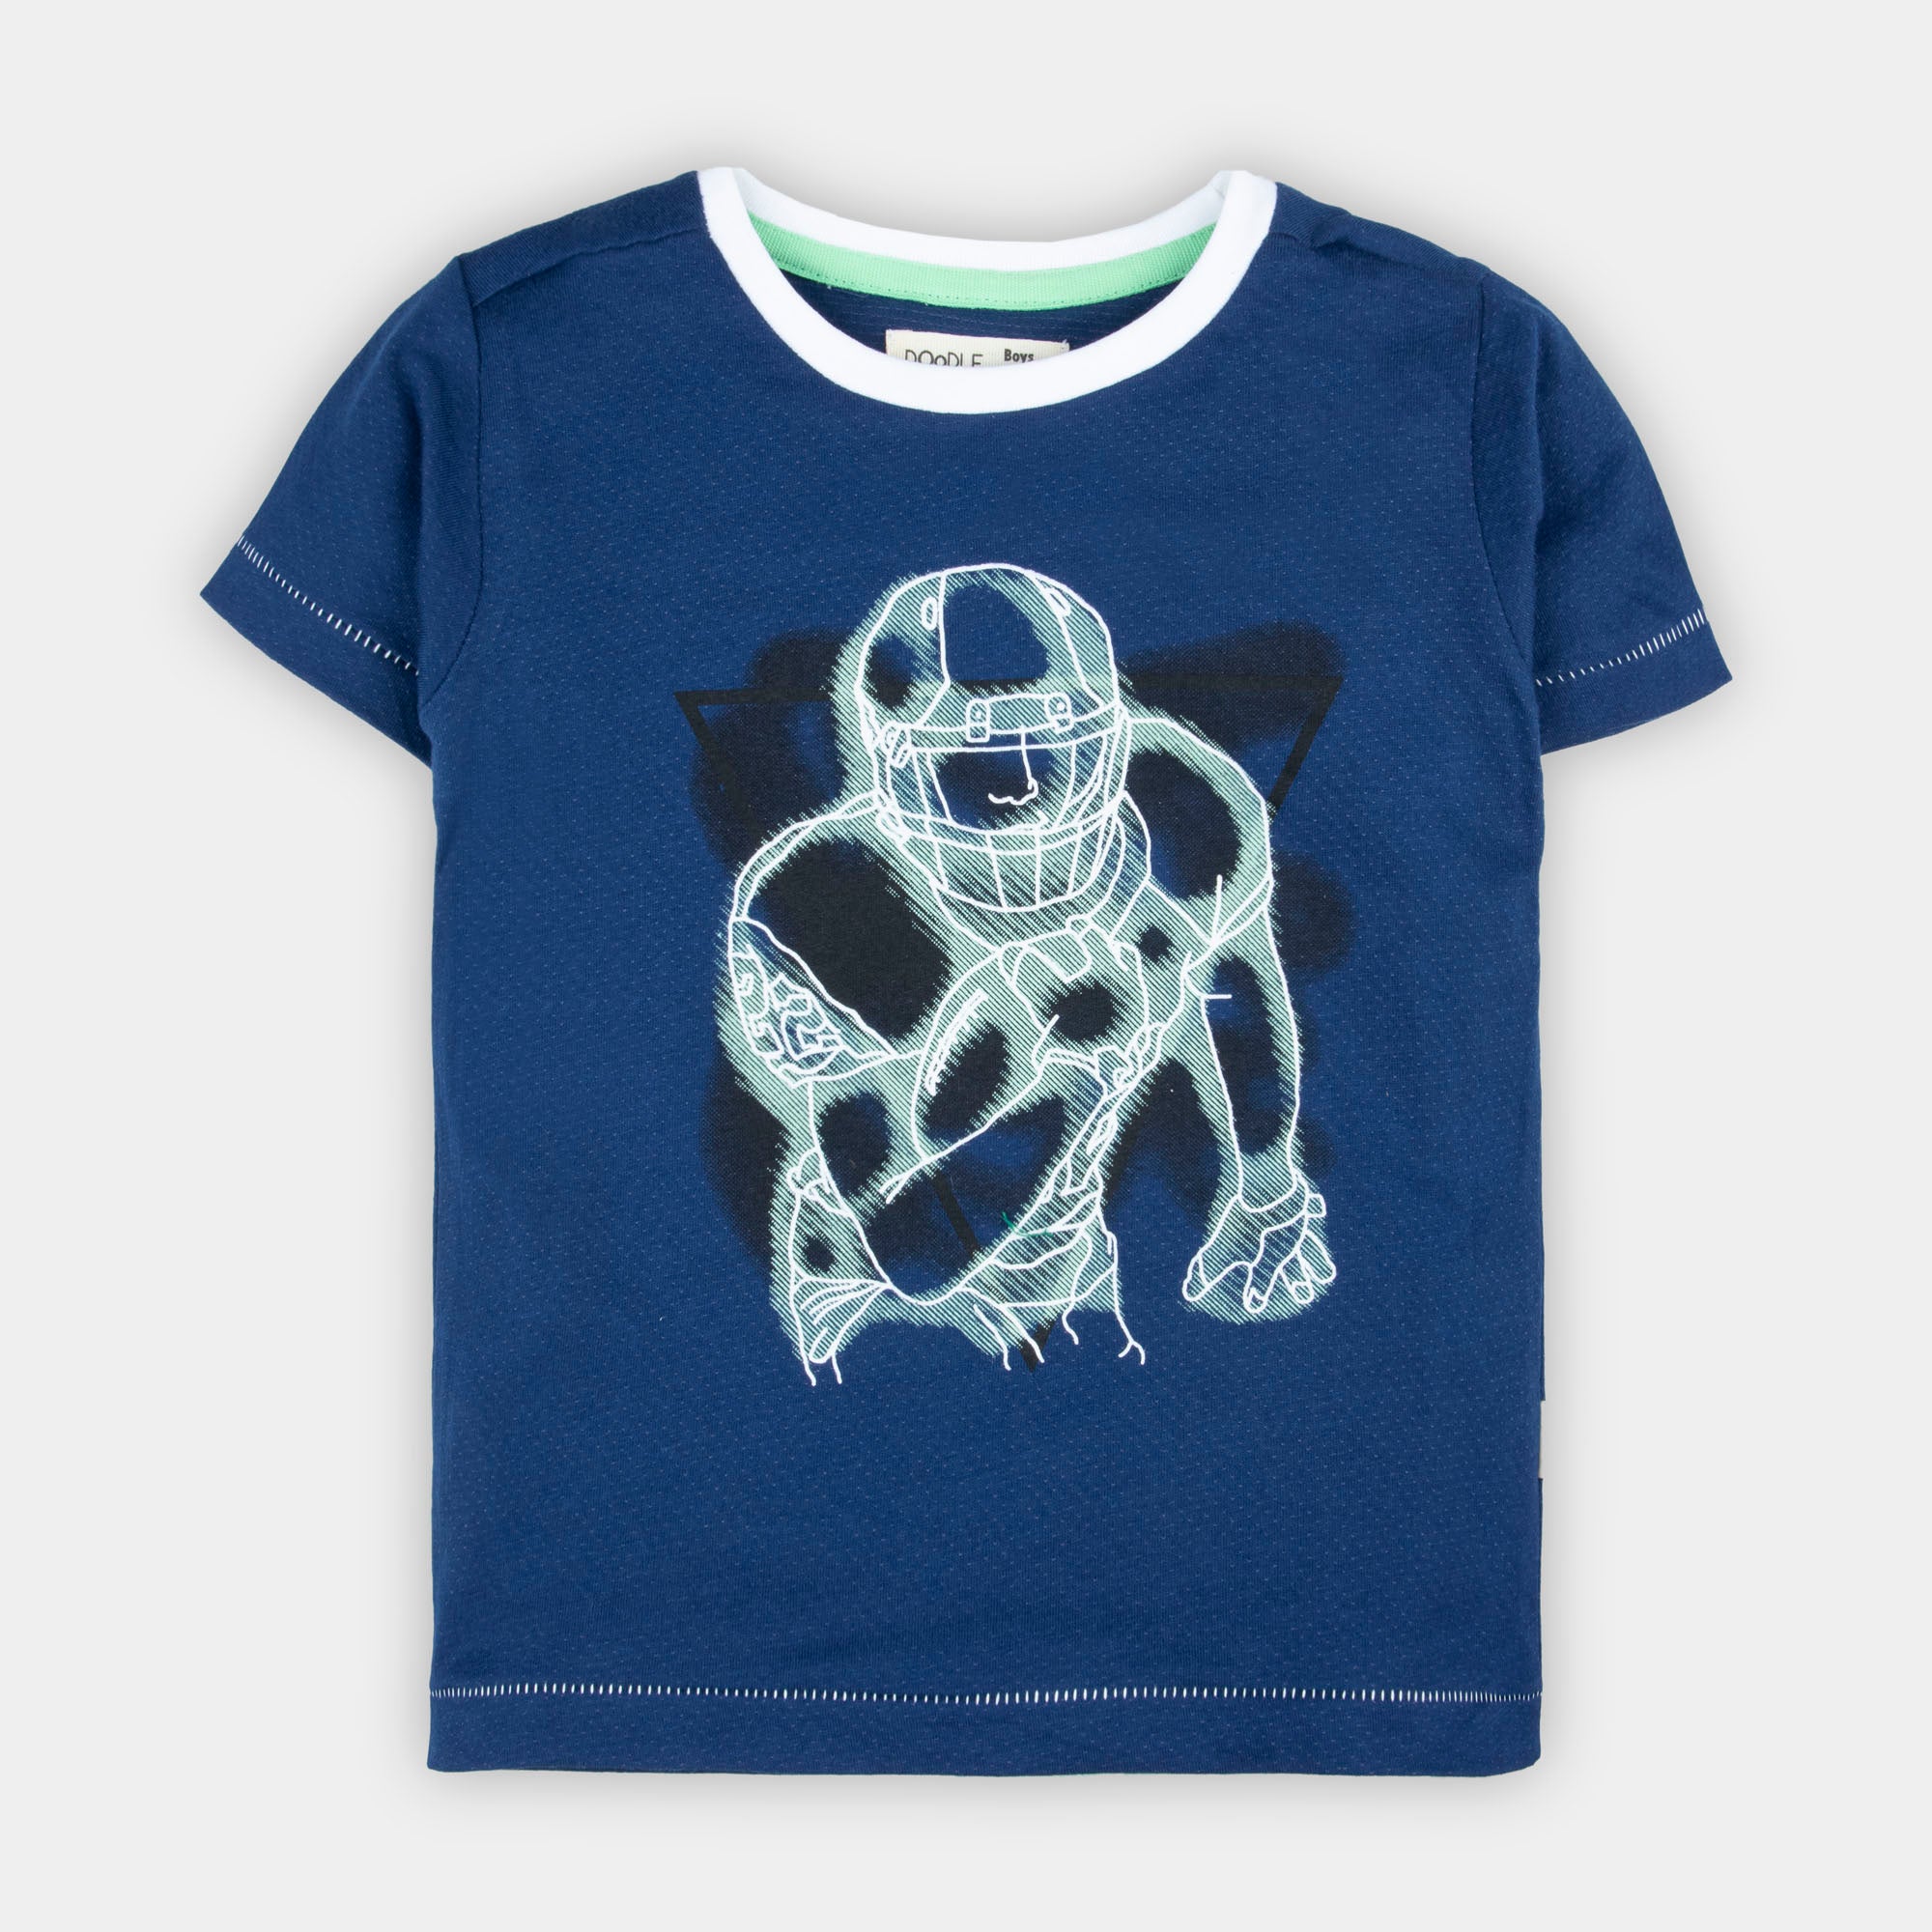 Navy Superhero Graphic T-Shirt